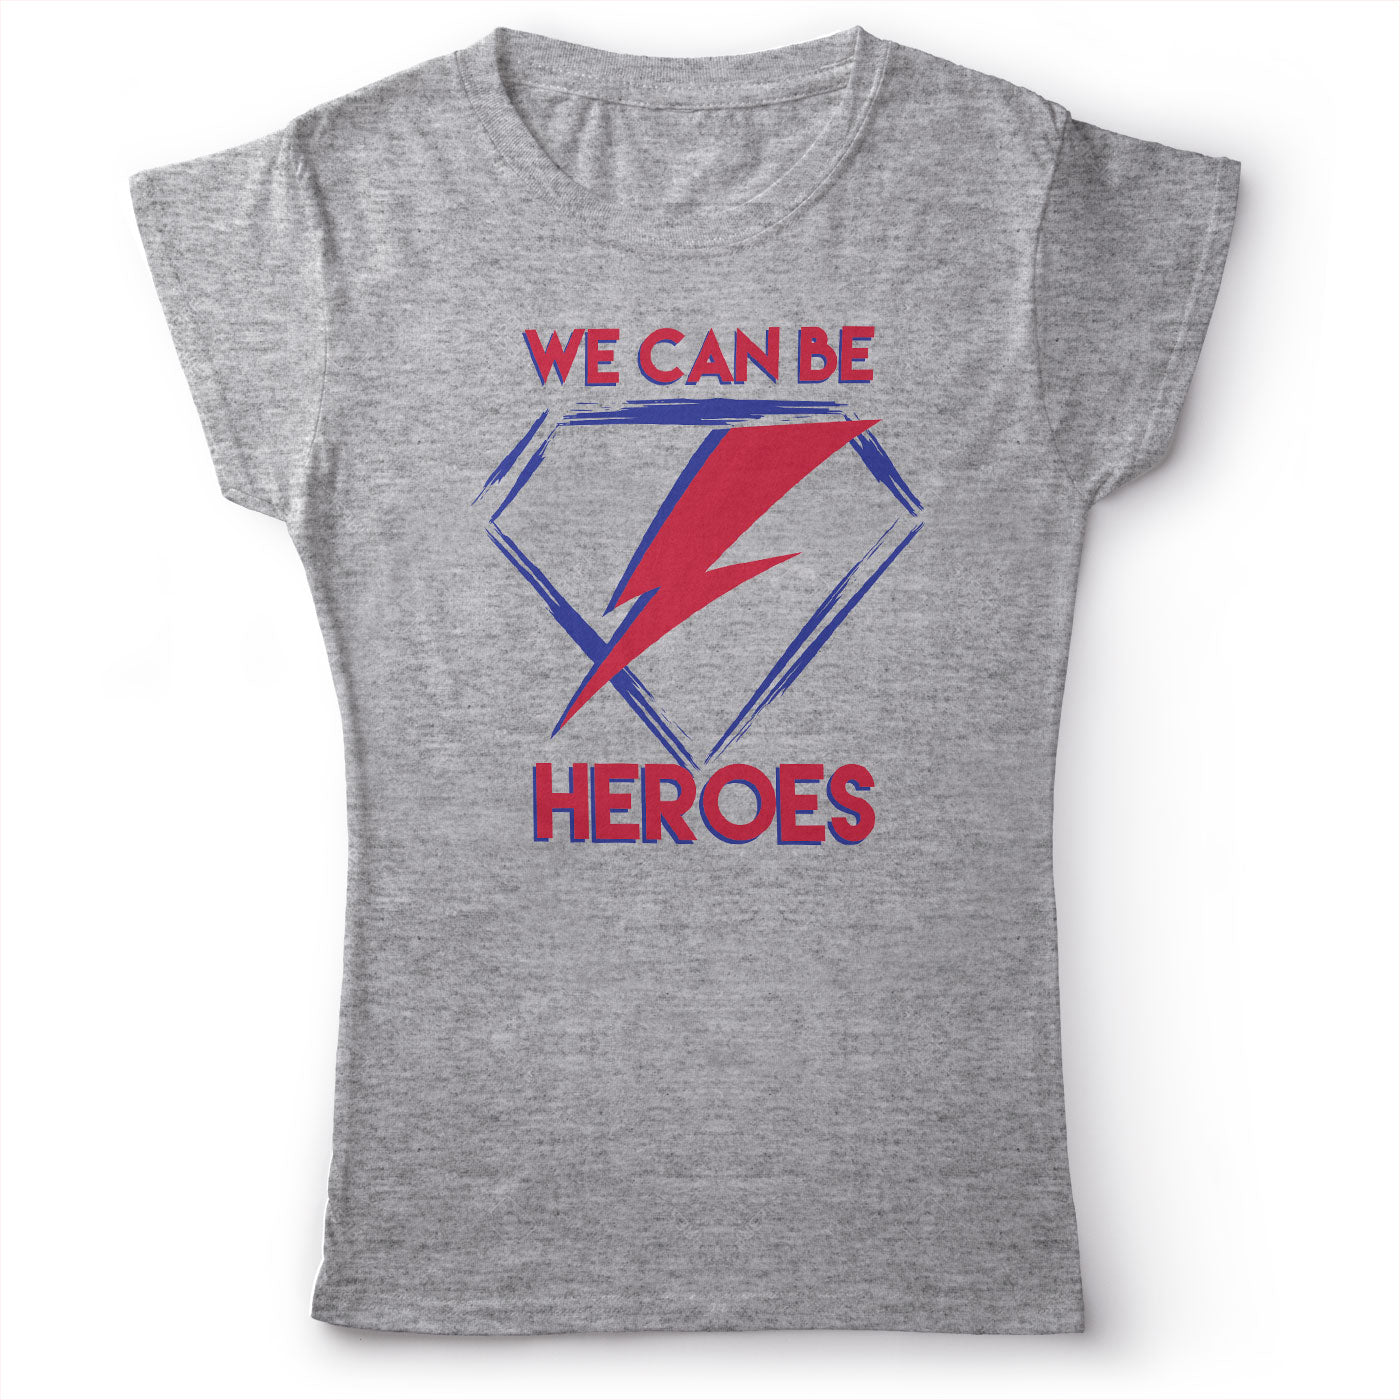 David Bowie - Heroes - Women's T-Shirt Gray 2